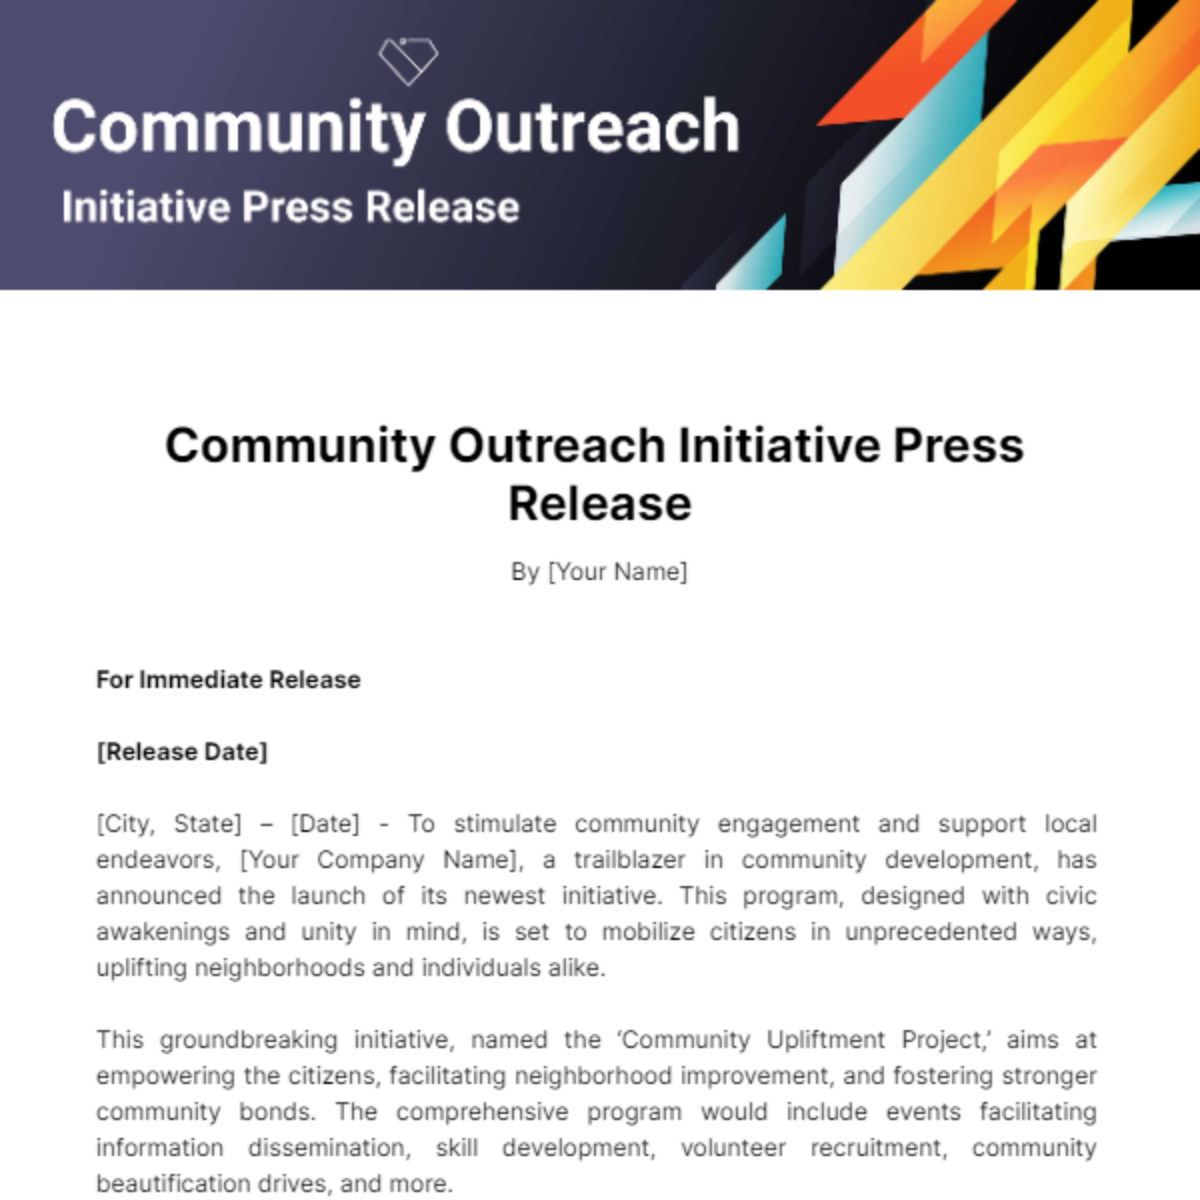 Community Outreach Initiative Press Release Template